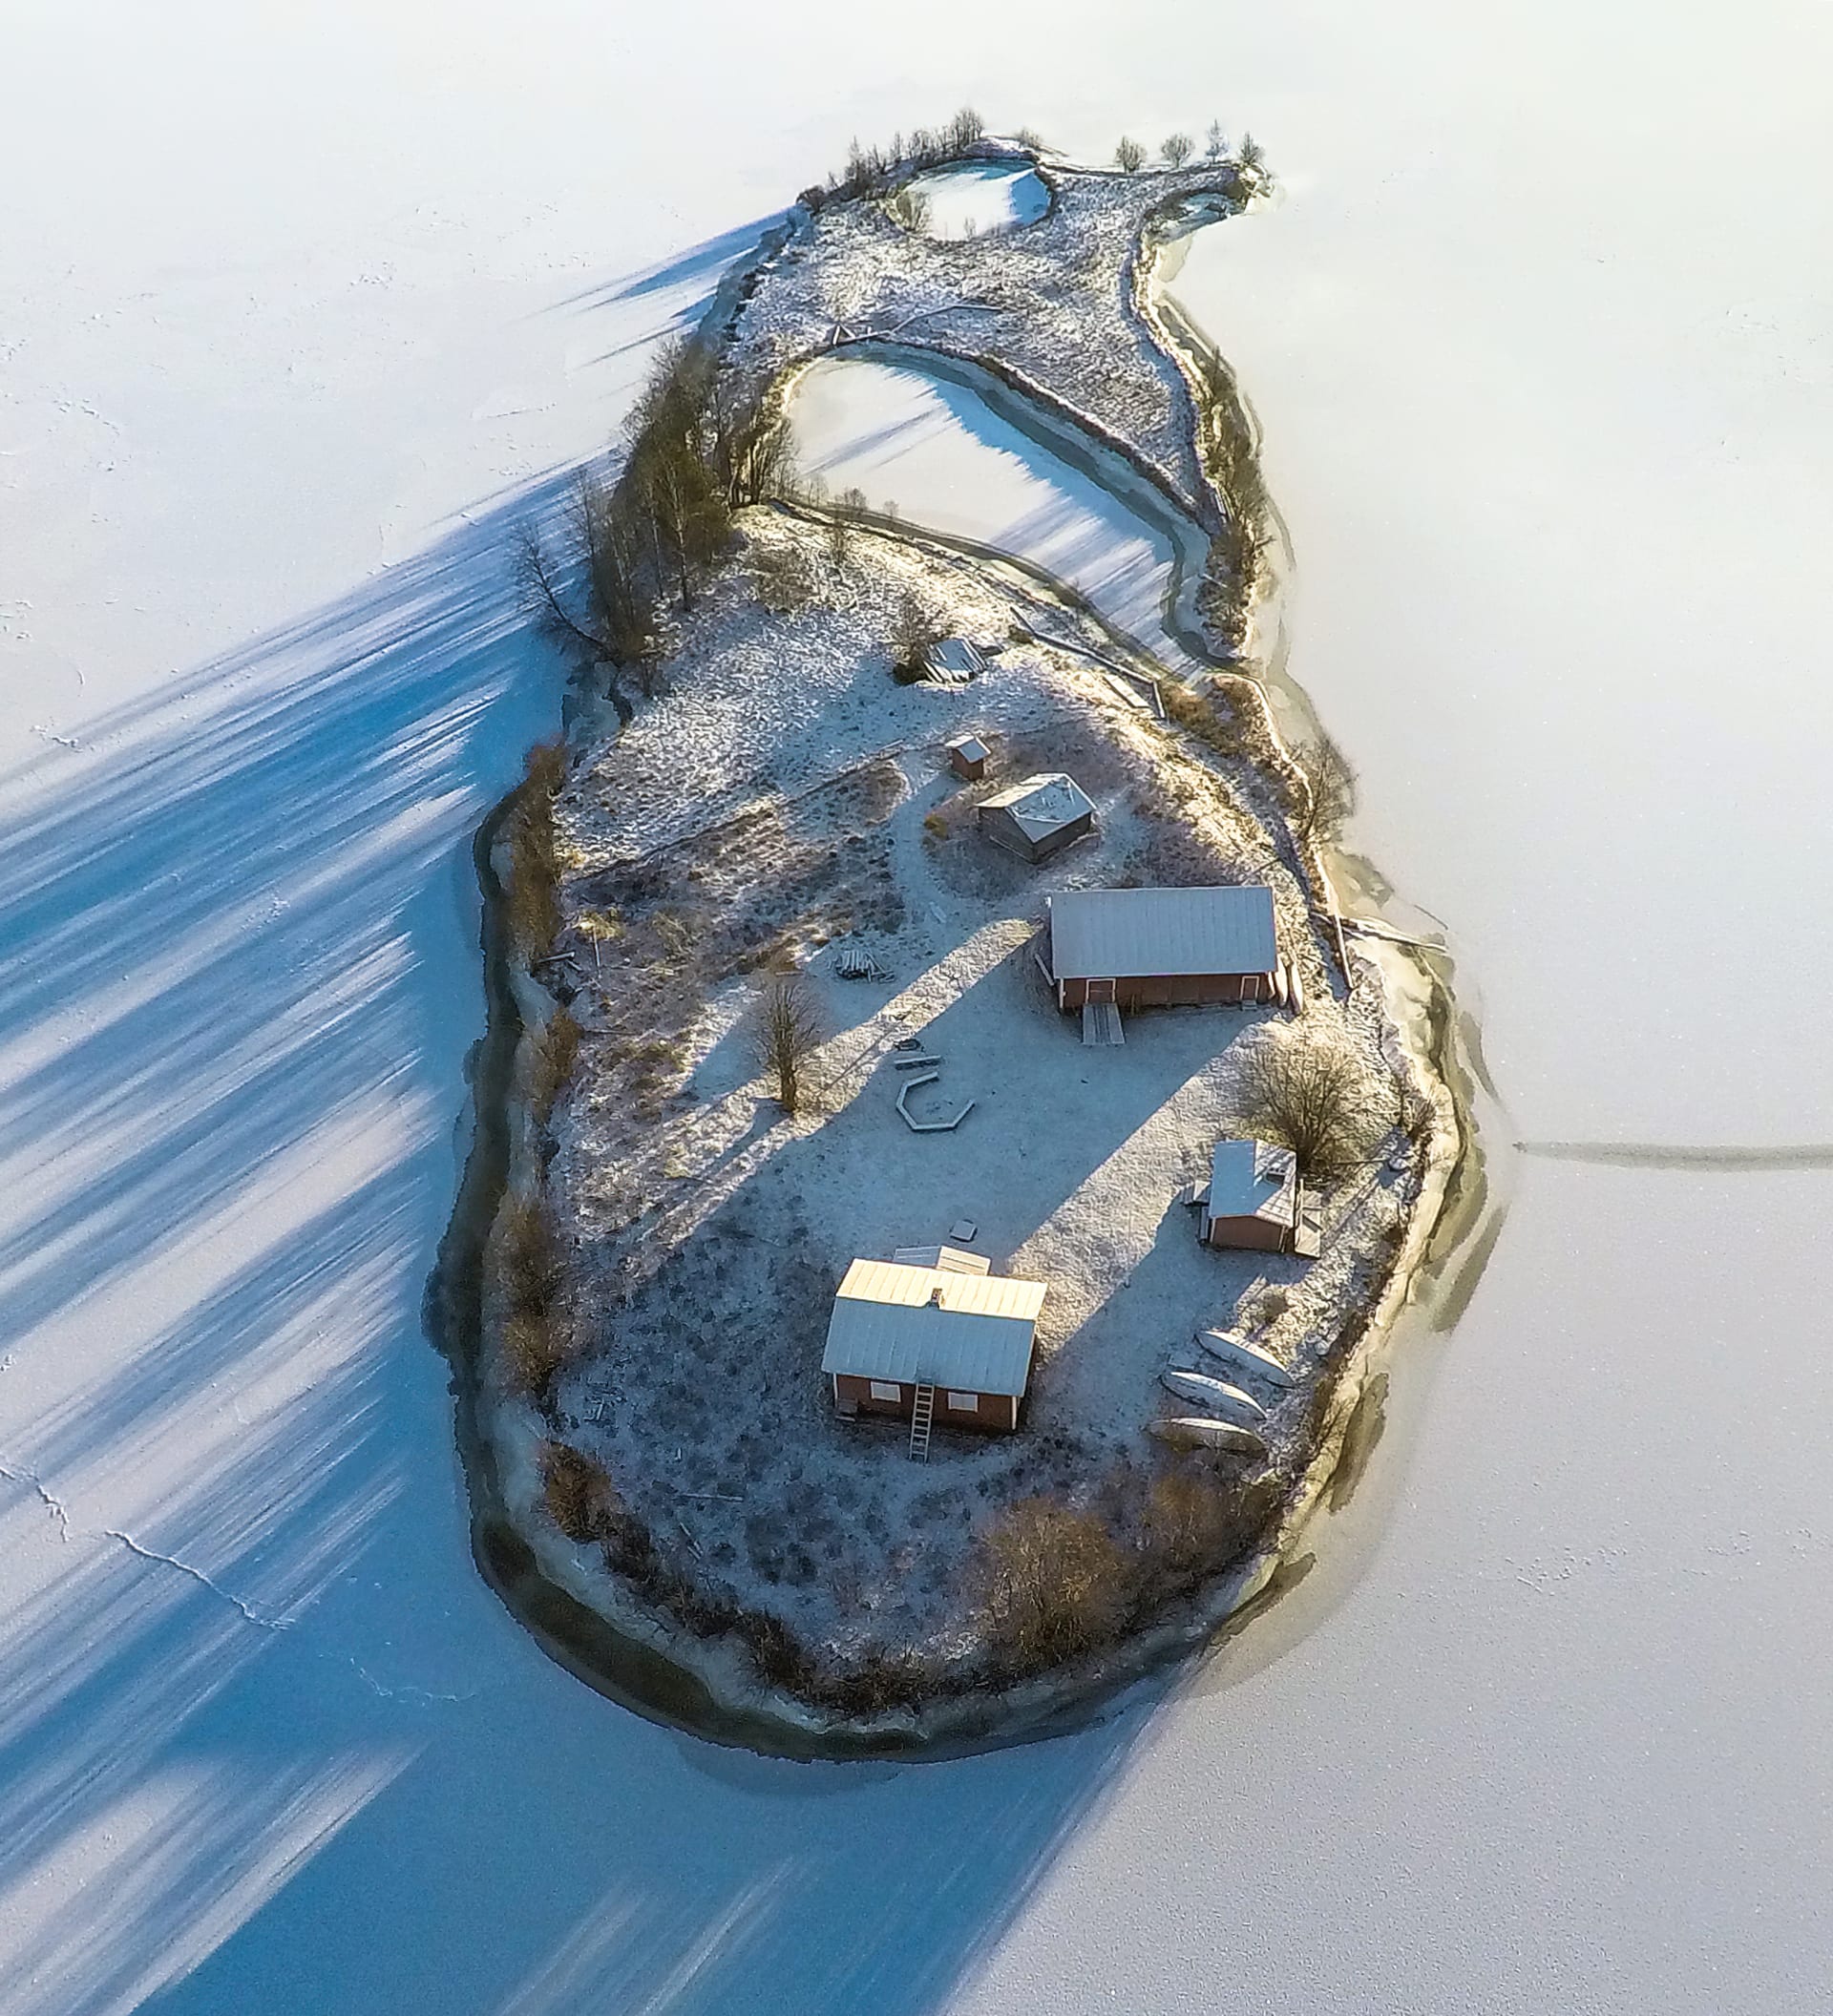 Voici comment les quatre saisons changent sur cette petite île de Finlande